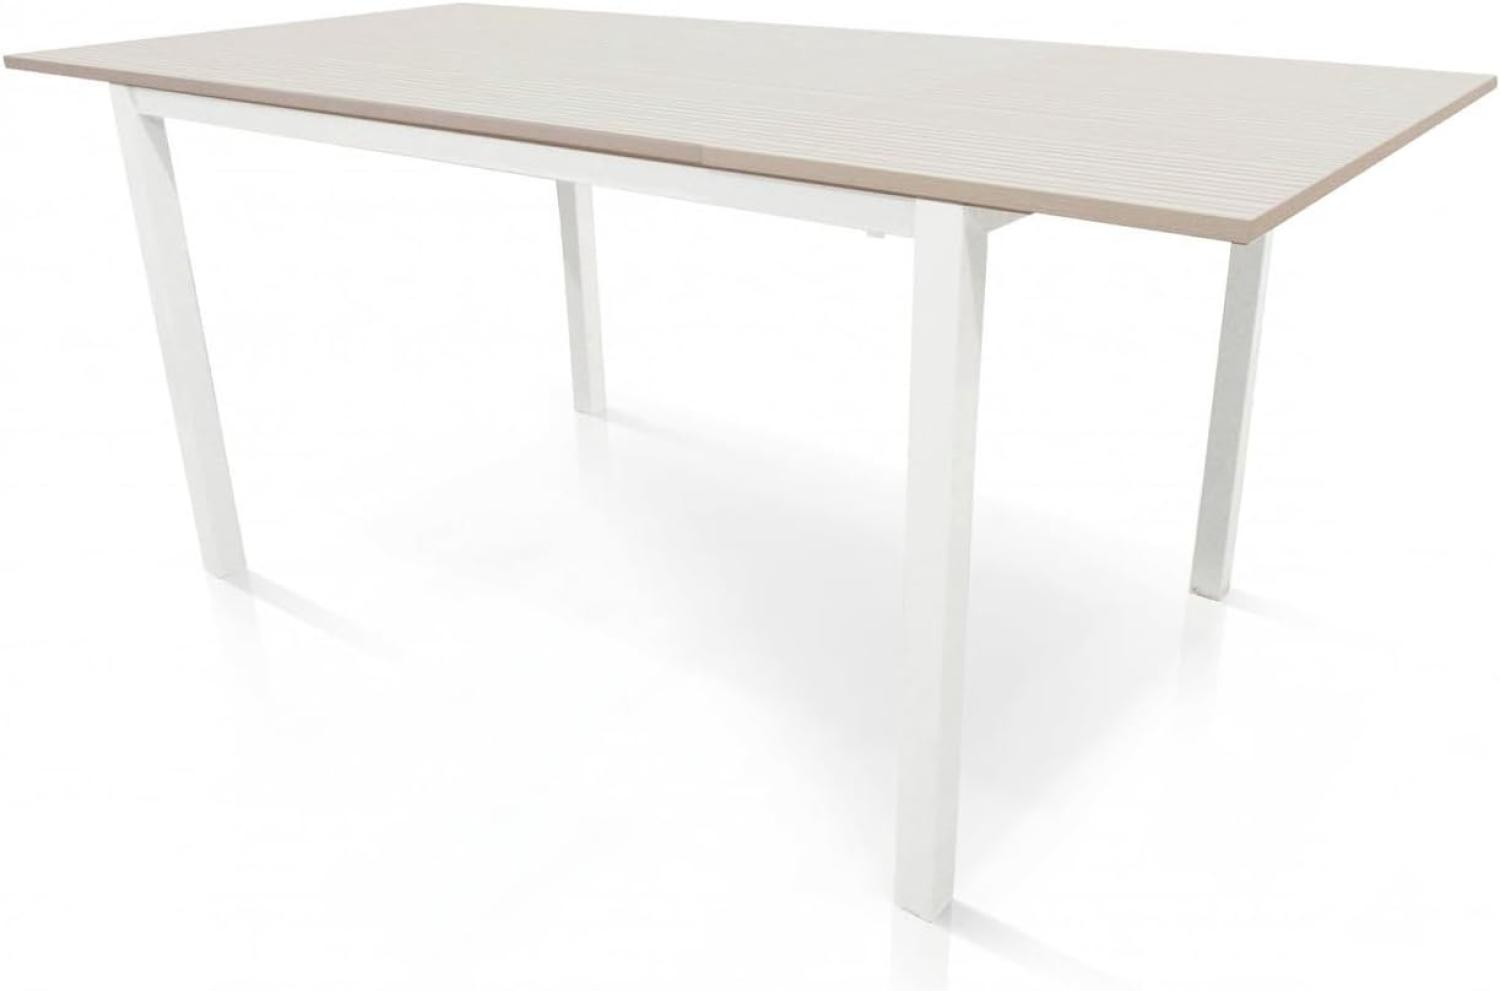 Dmora Ausziehbarer Tisch aus lackiertem Metall und Laminatplatte, weiße Farbe, 110 x 76 x 70 cm Bild 1